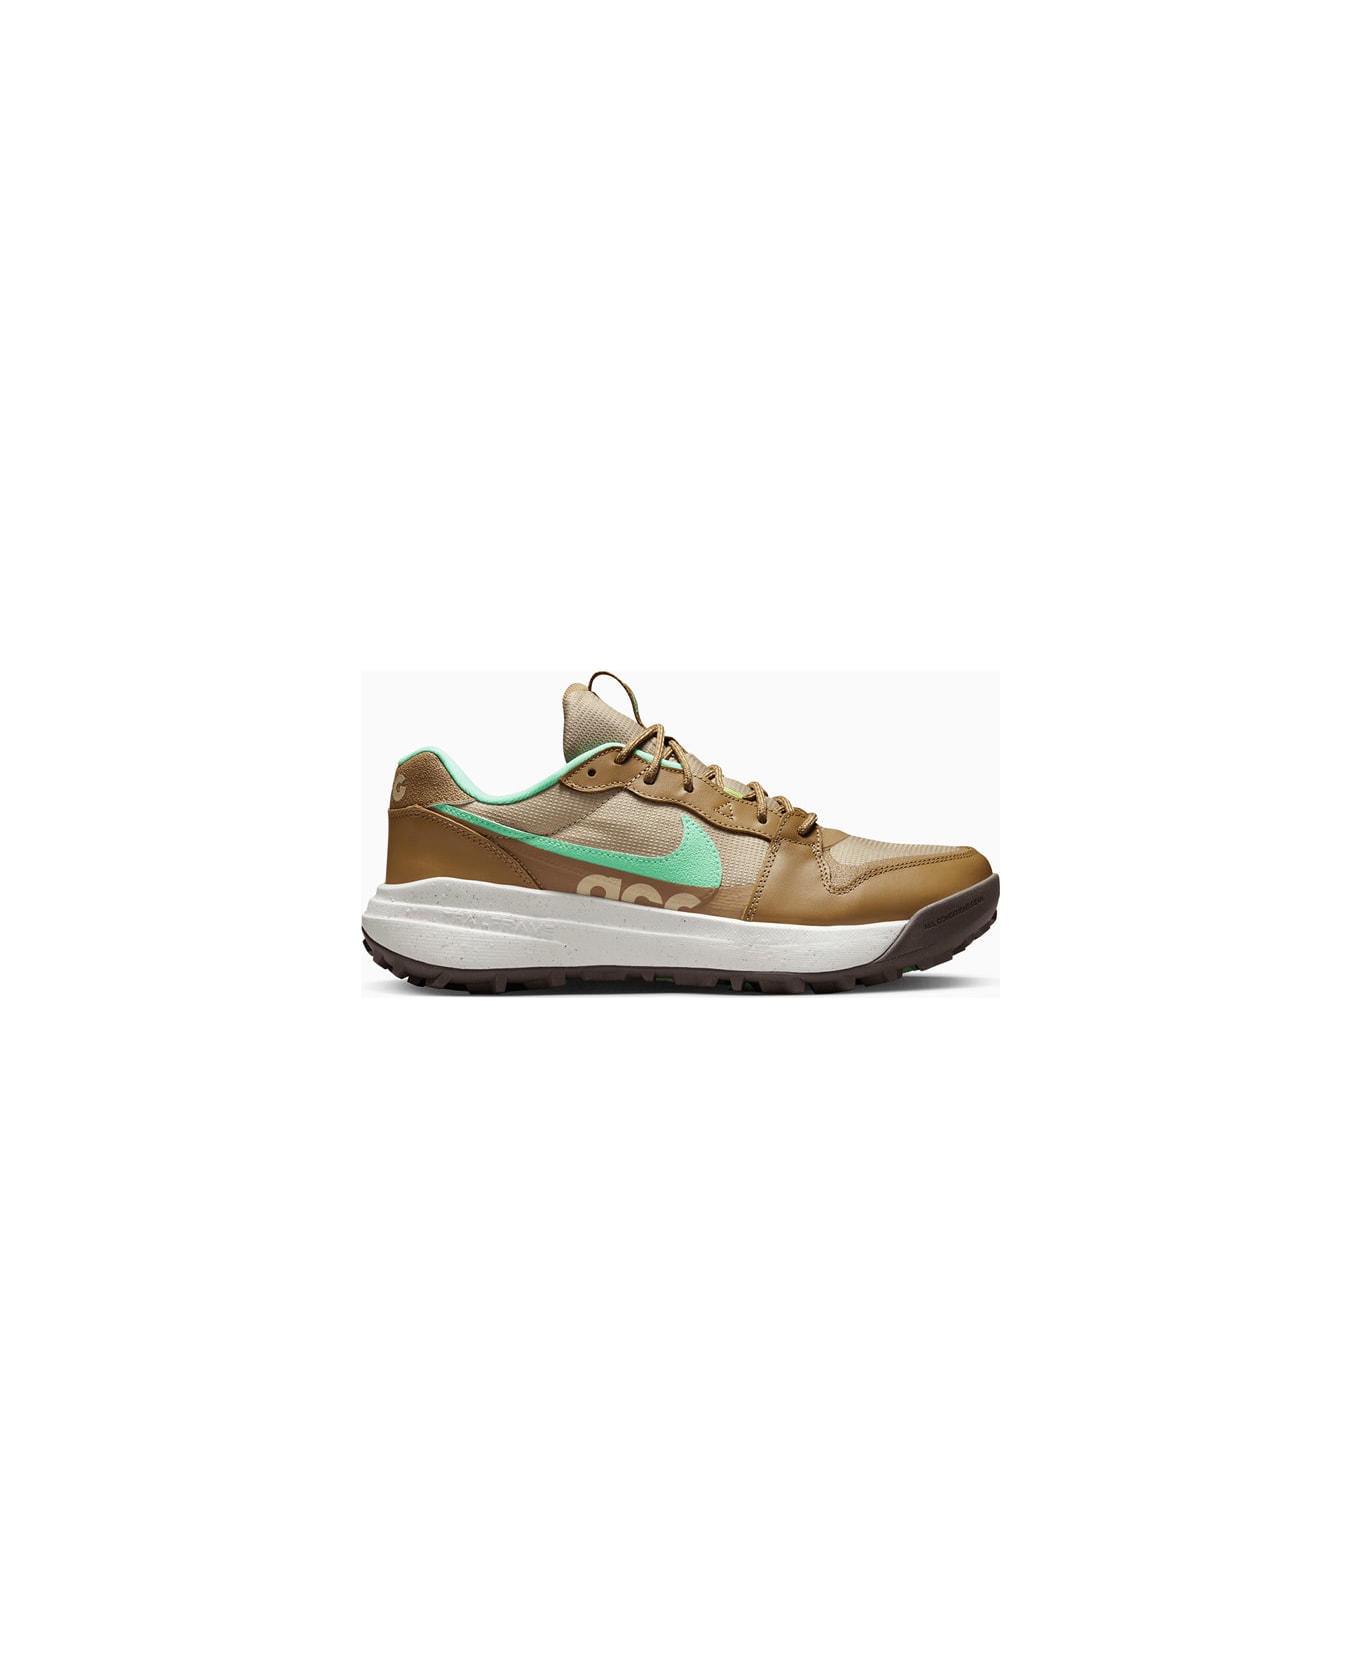 Nike Acg Lowcate Sneakers Dx2256-200 - Brown